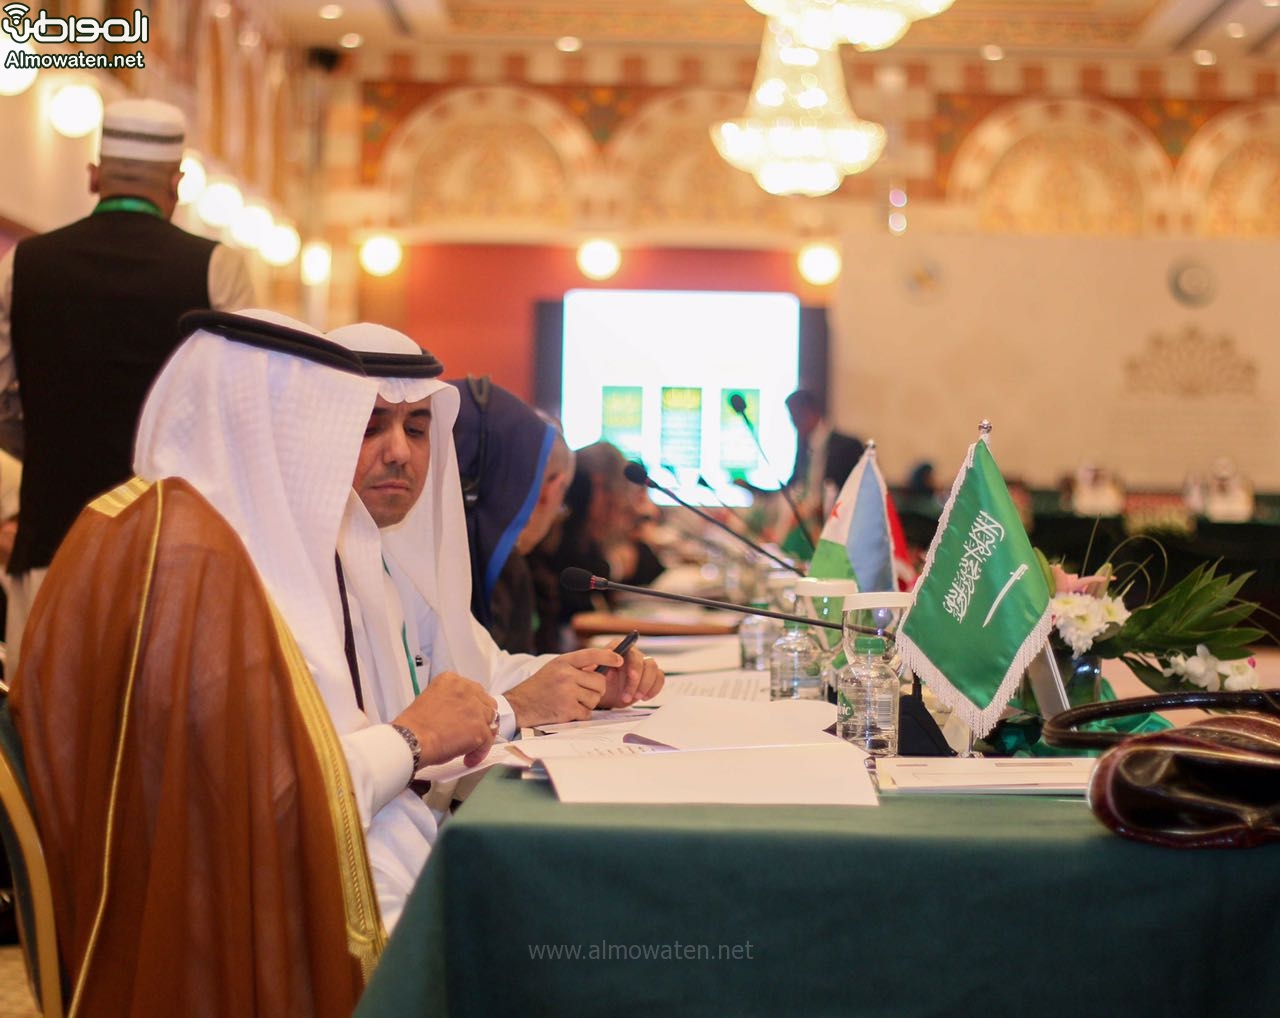 “المواطن” توثق بالصور.. مؤتمر الزواج والأسرة في #جدة